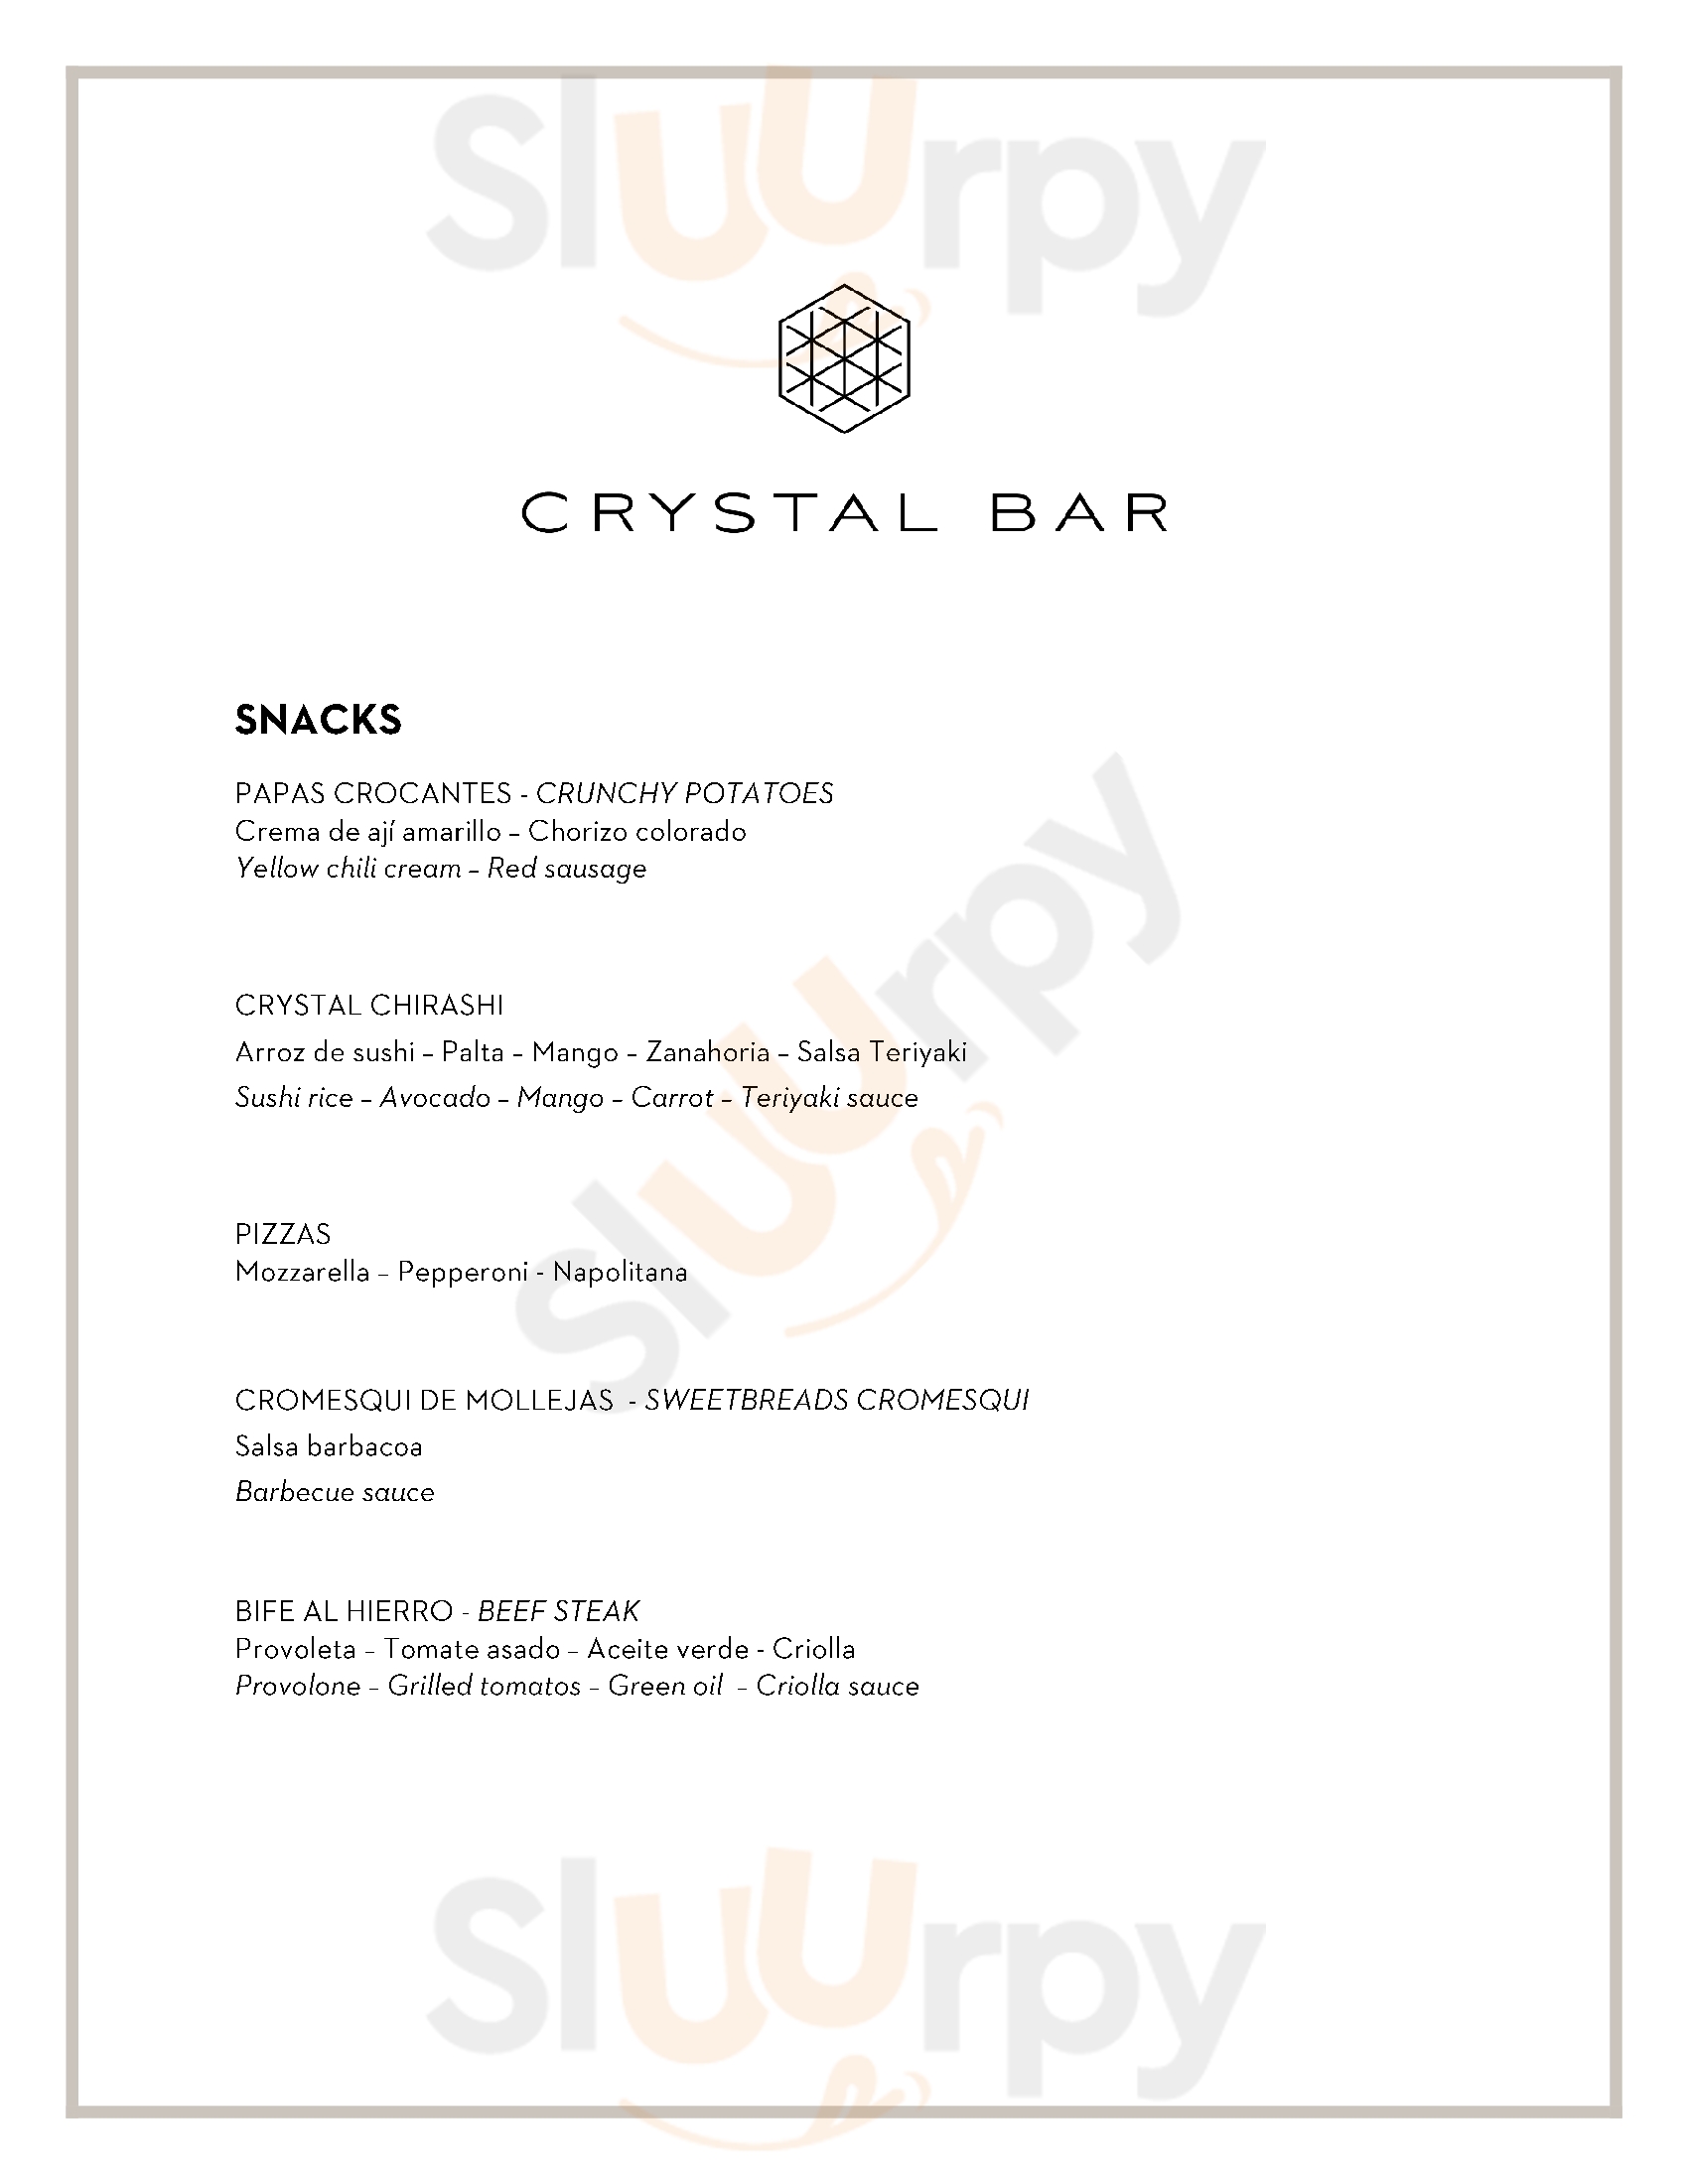 Crystal Bar Buenos Aires Menu - 1